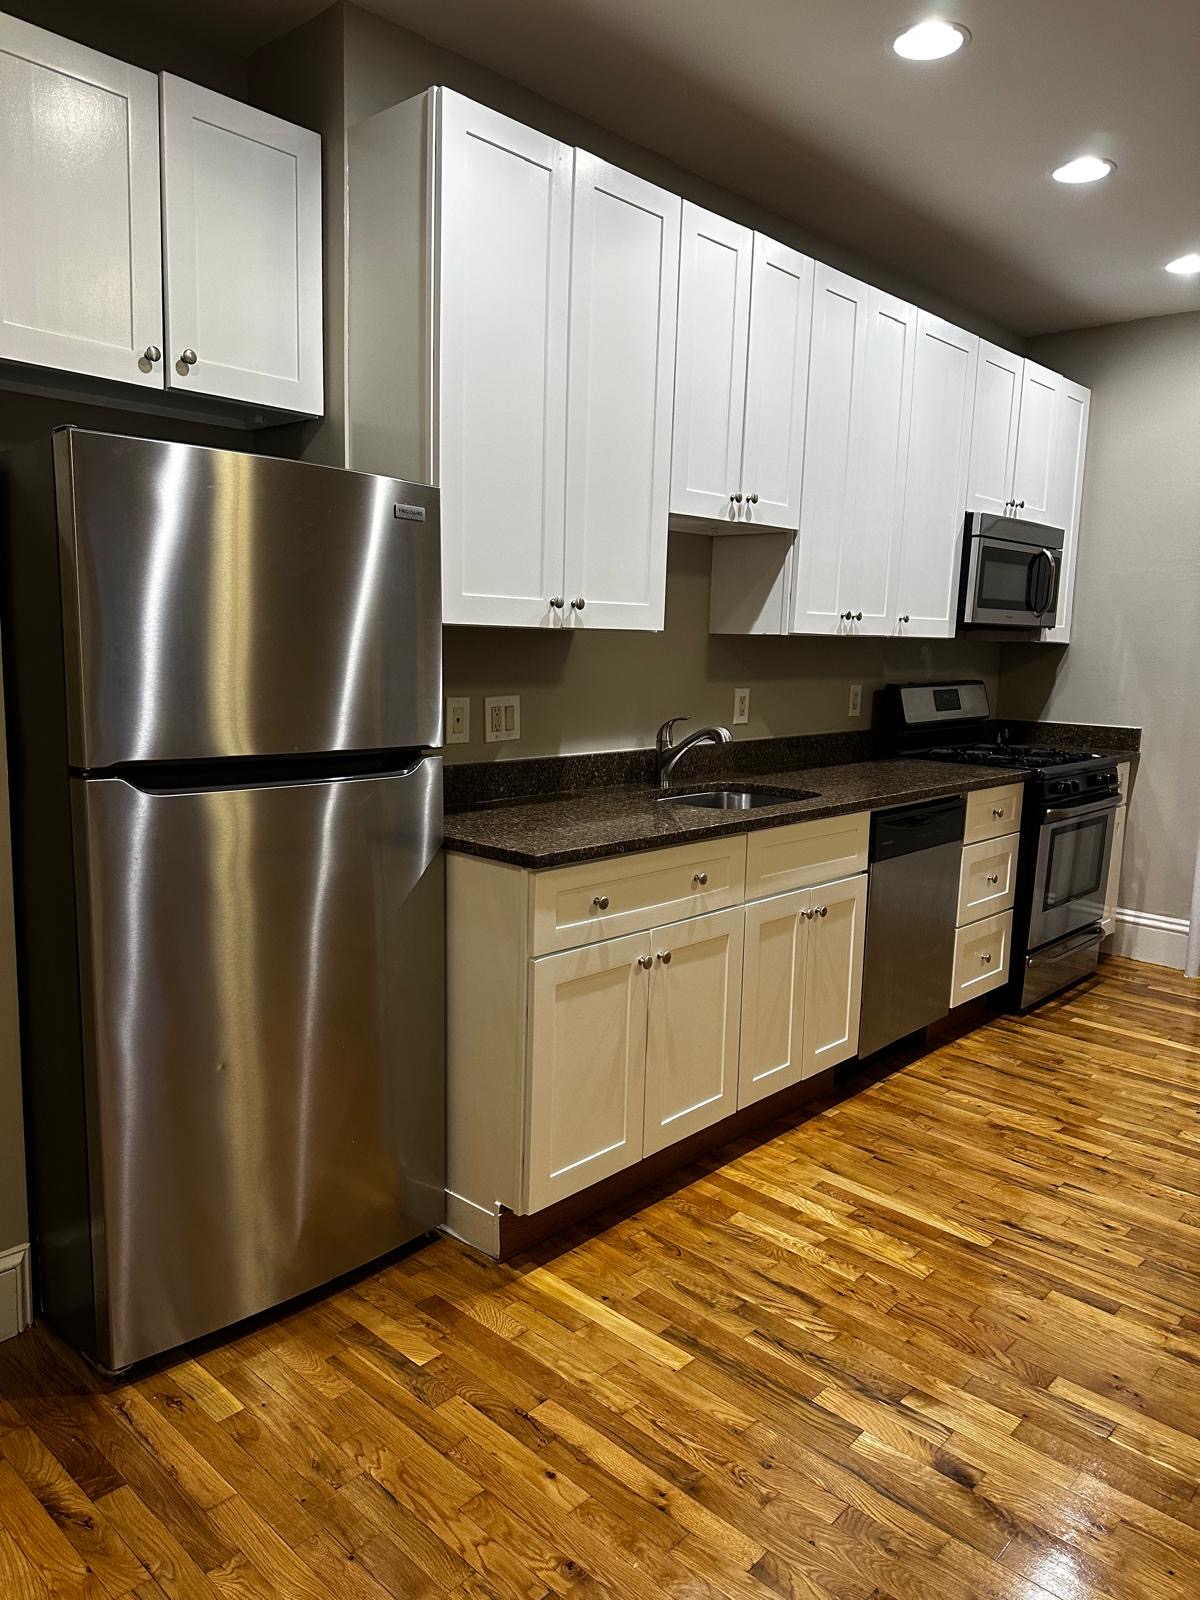 Photos of apartment on Wabon St.,Boston MA 02121